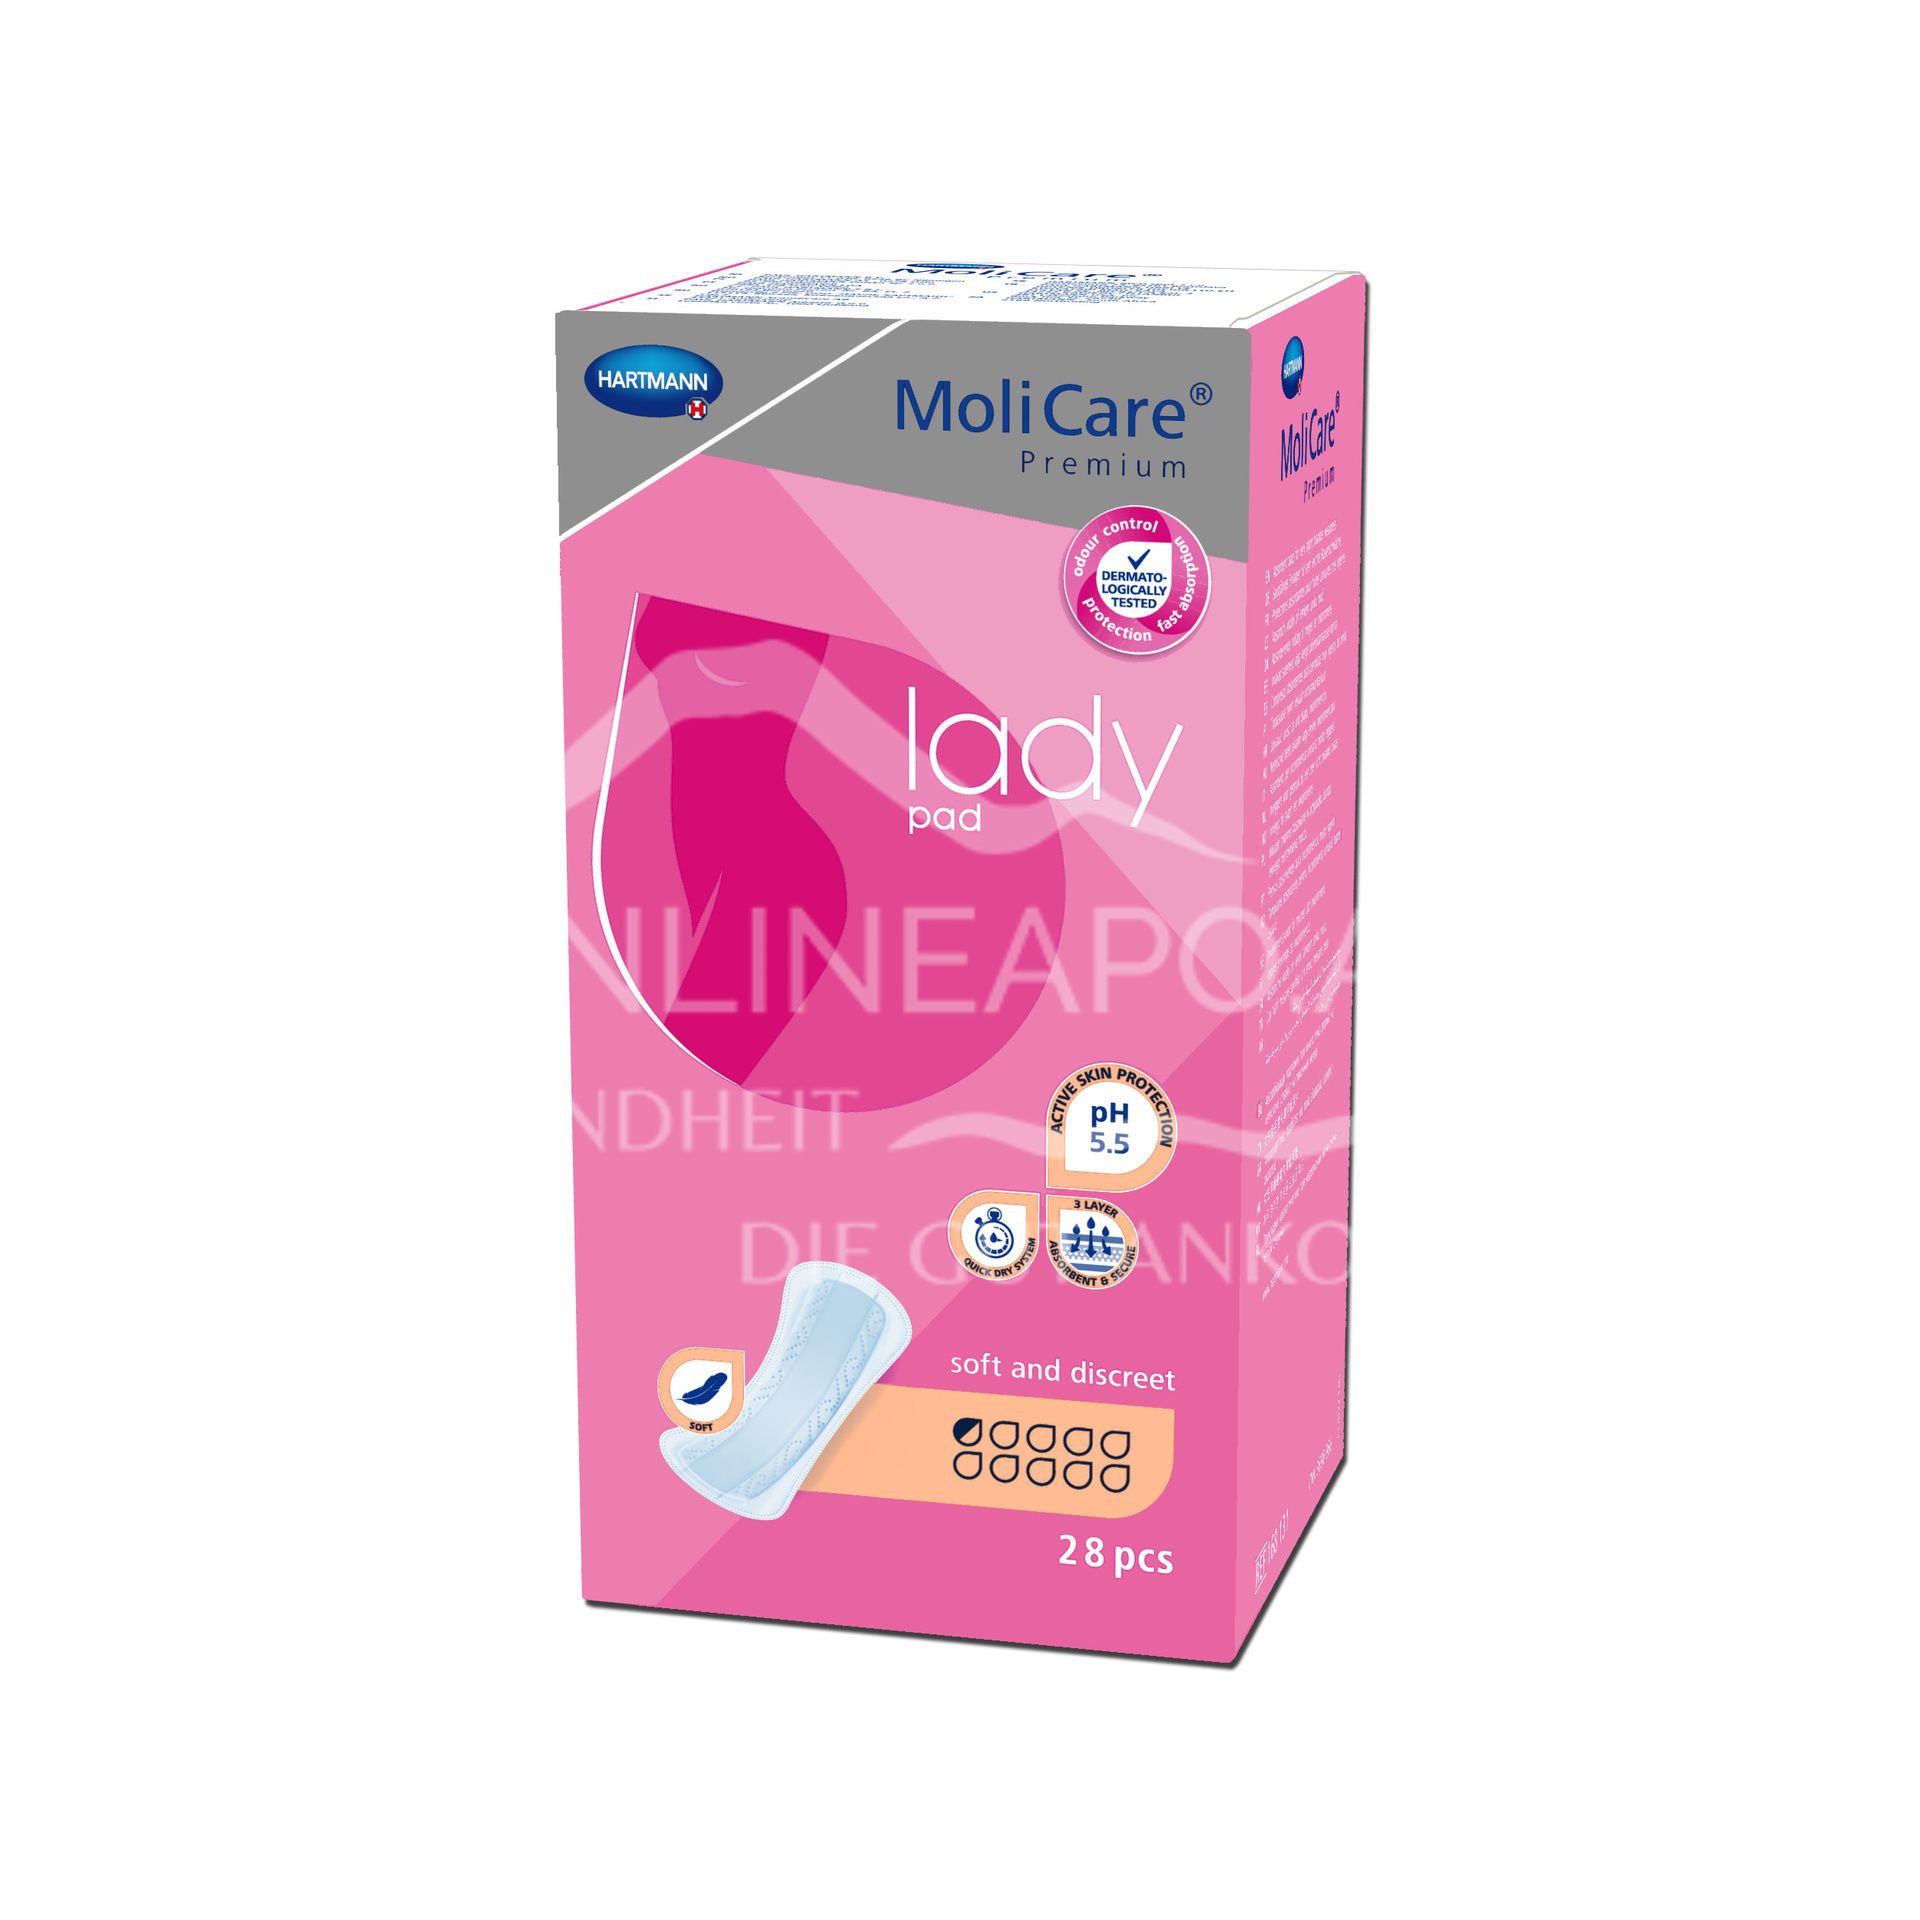 MoliCare® Premium lady pad 0,5 Tropfen Inkontinenzeinlagen